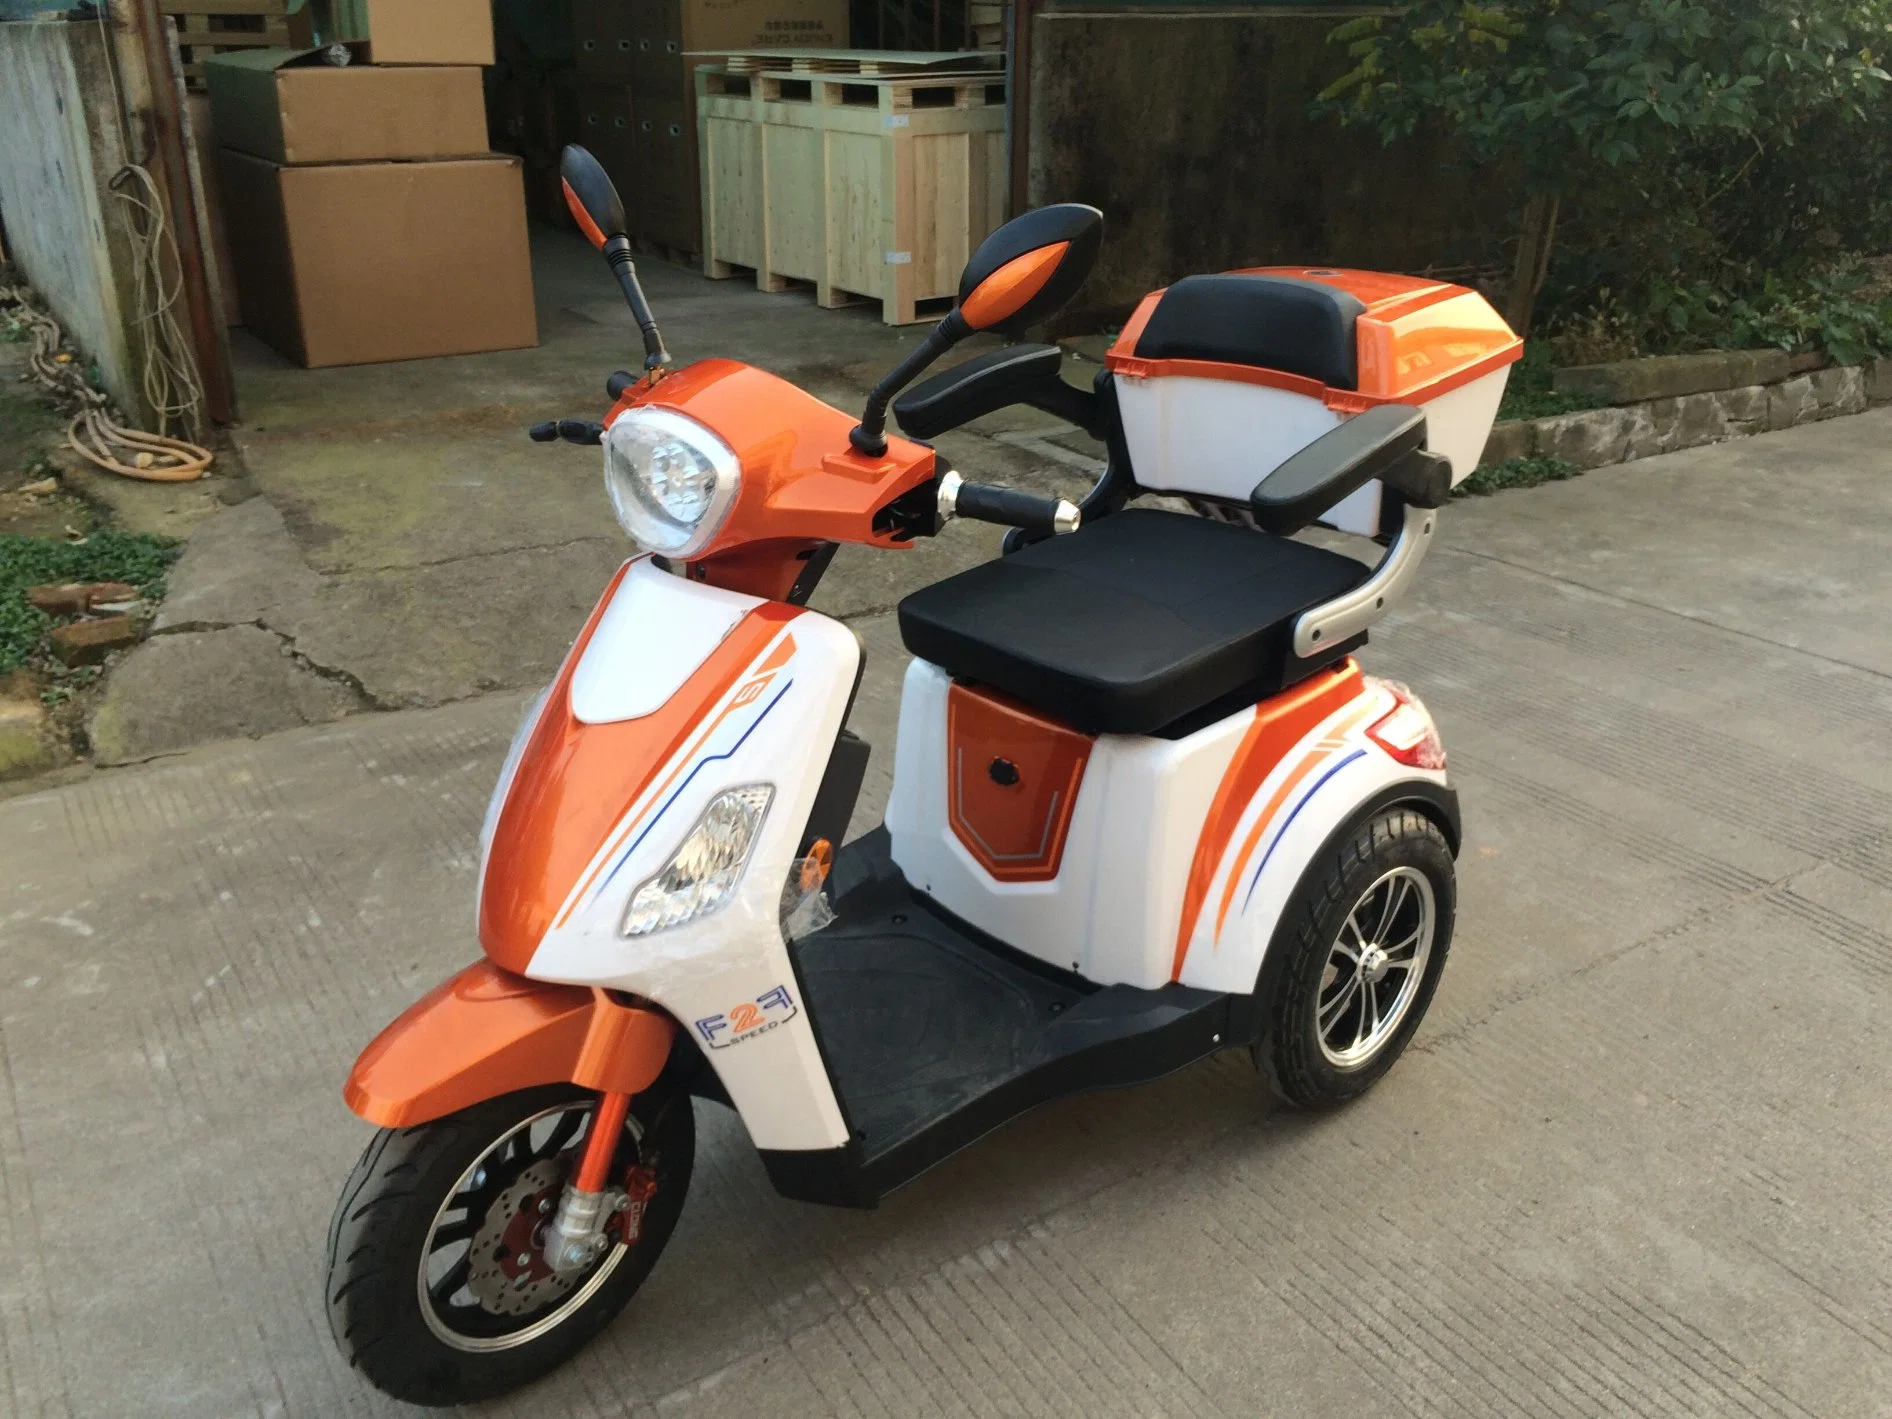 Scooter de mobilité électrique à trois roues avec moteur à double réduction